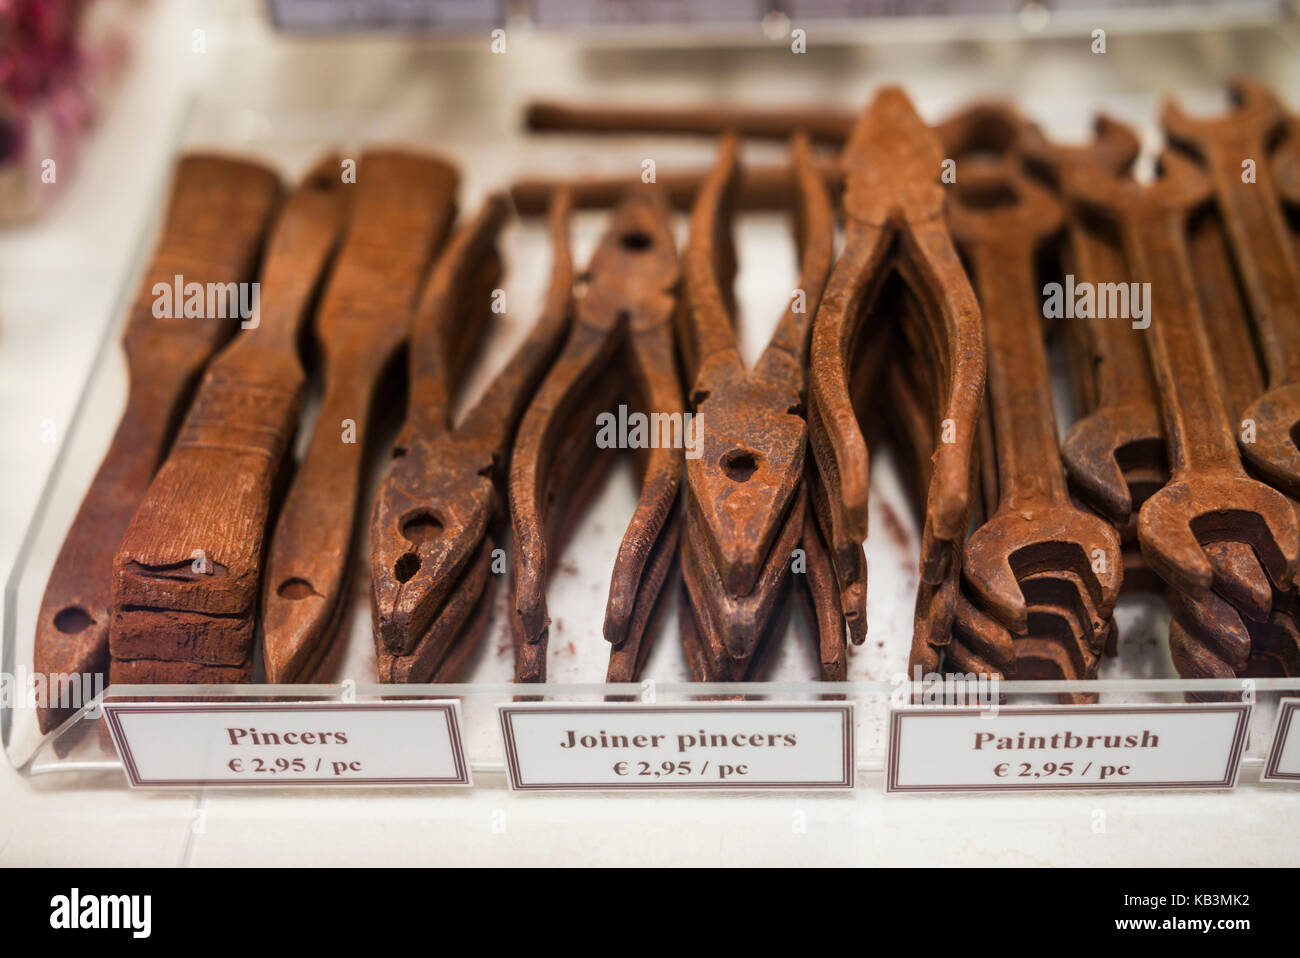 Belgique, bruges, boutique de chocolats belges, chocolat outils Photo Stock  - Alamy